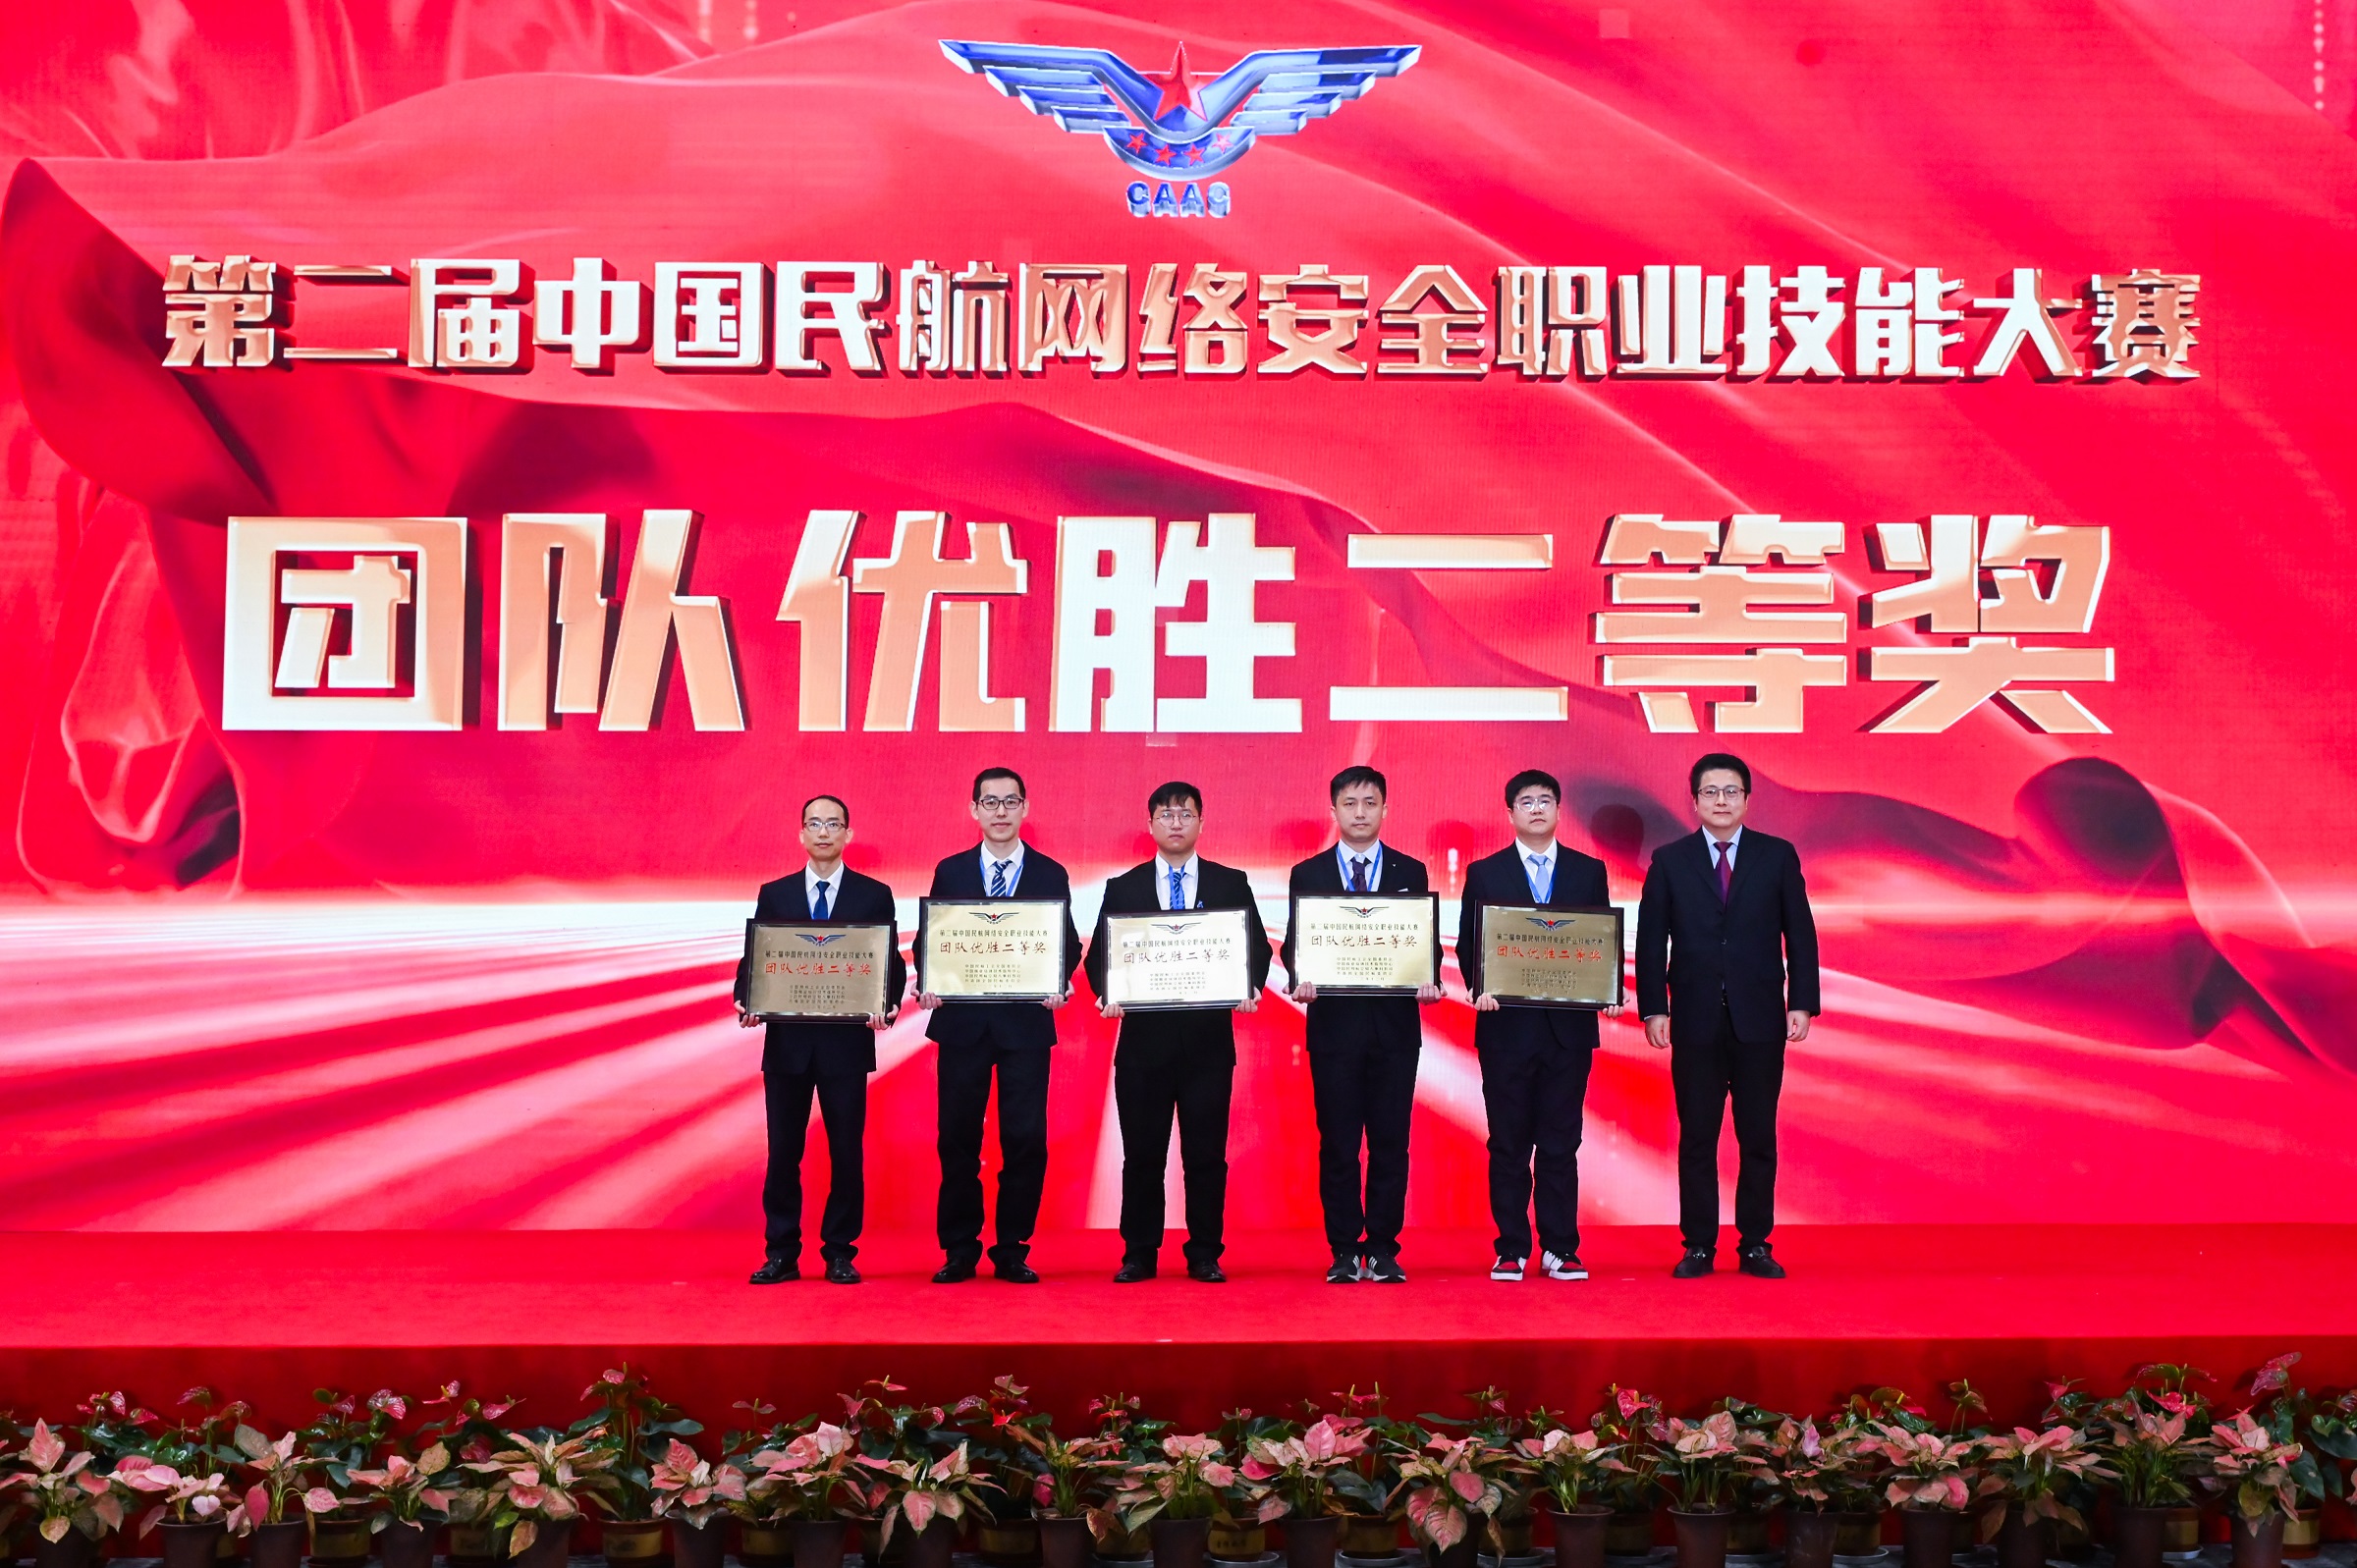 团队优胜二等奖 河北机场集团在第二届中国民航网络安全职业技能大赛中获佳绩